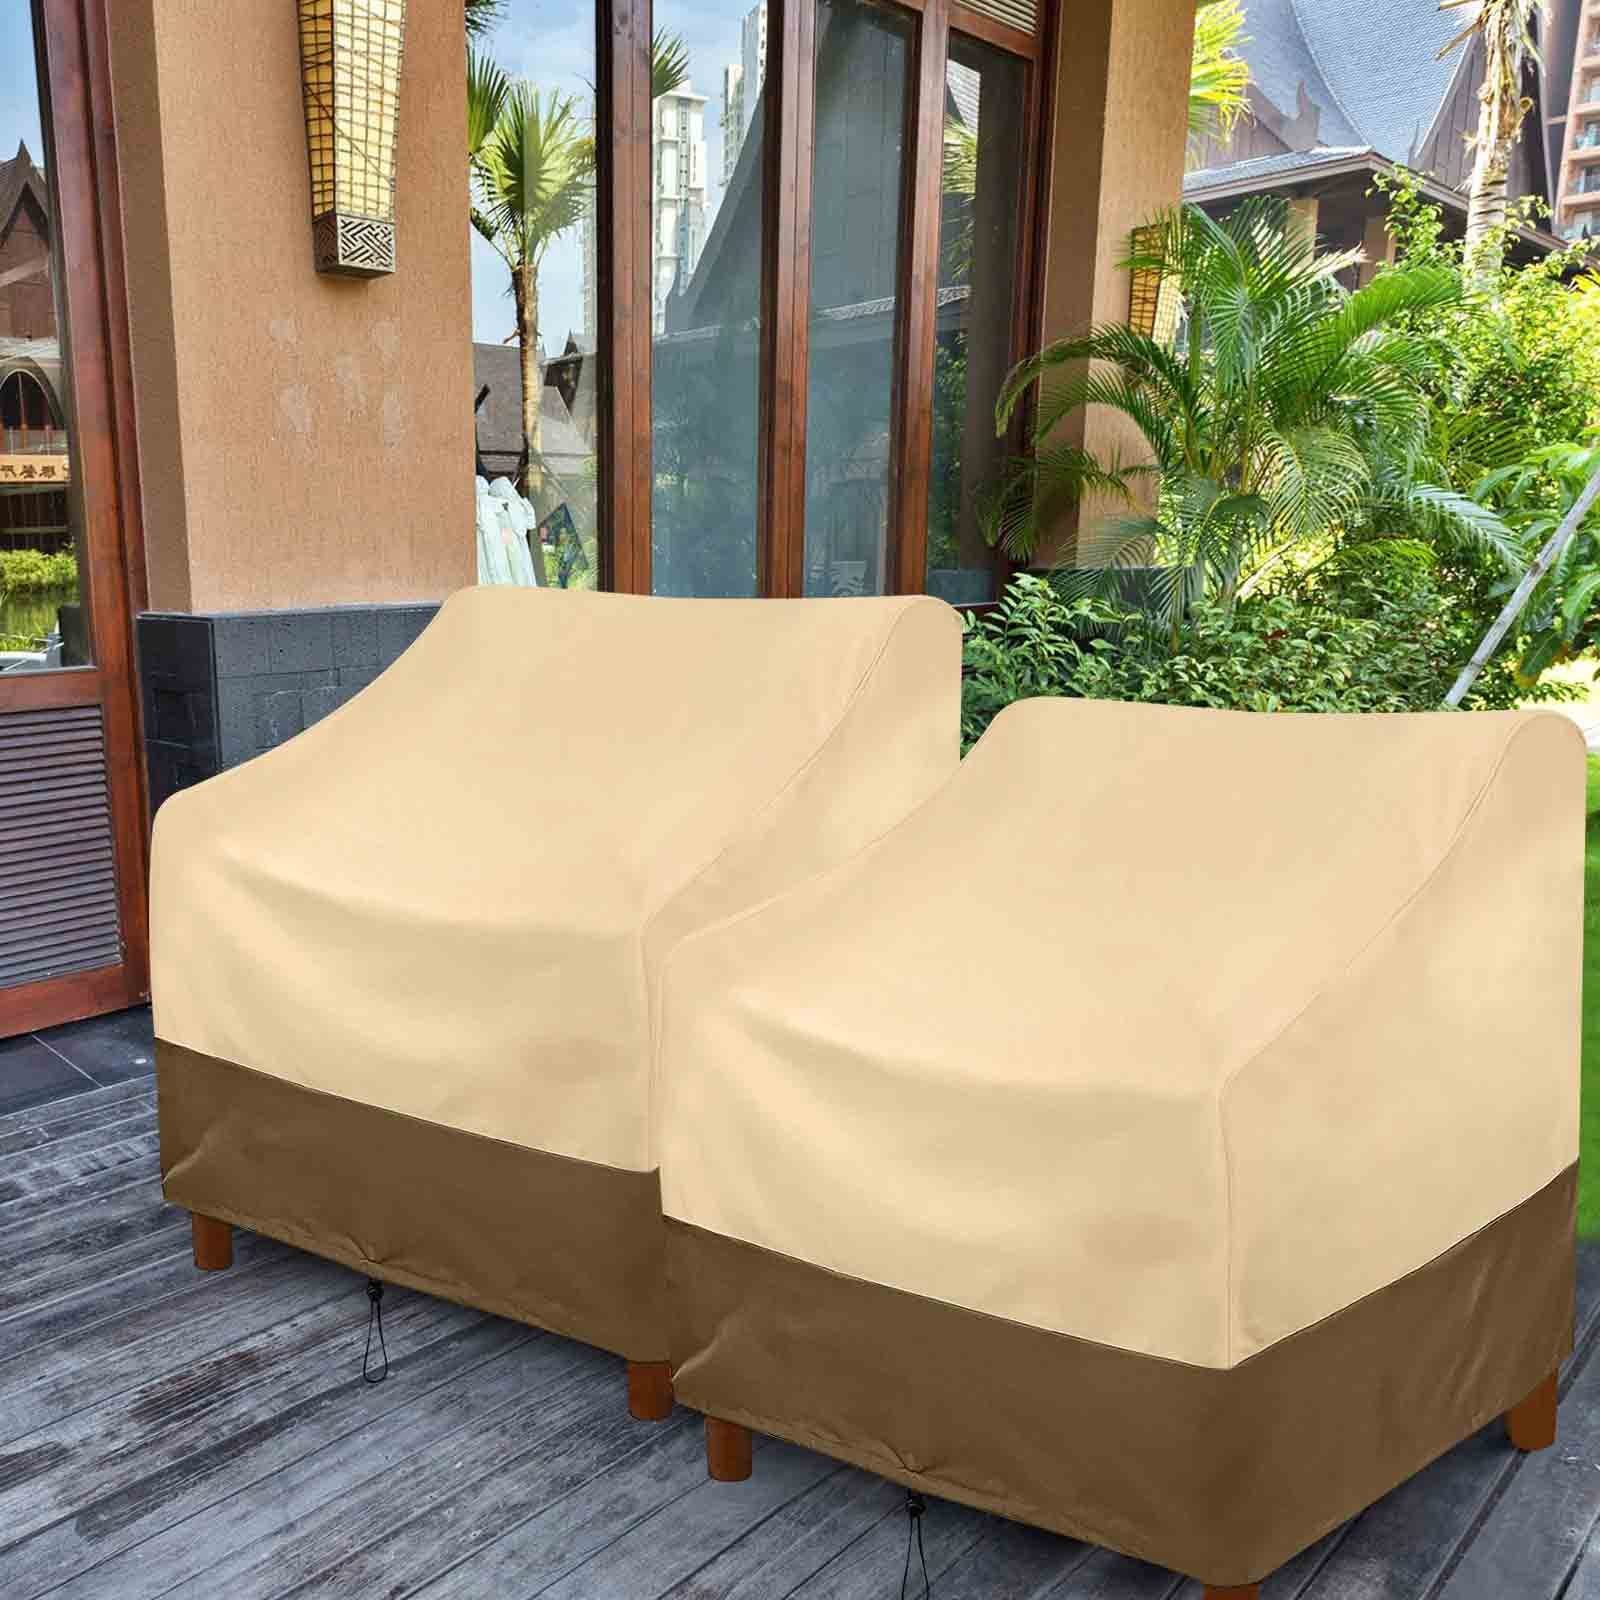 Beige, Terrasse Outdoor-Stuhl Gartenmöbel-Schutzhülle Ultraviolet, Abdeckung, Anti Sunicol Rasen Möbel wasserdicht, deckt für